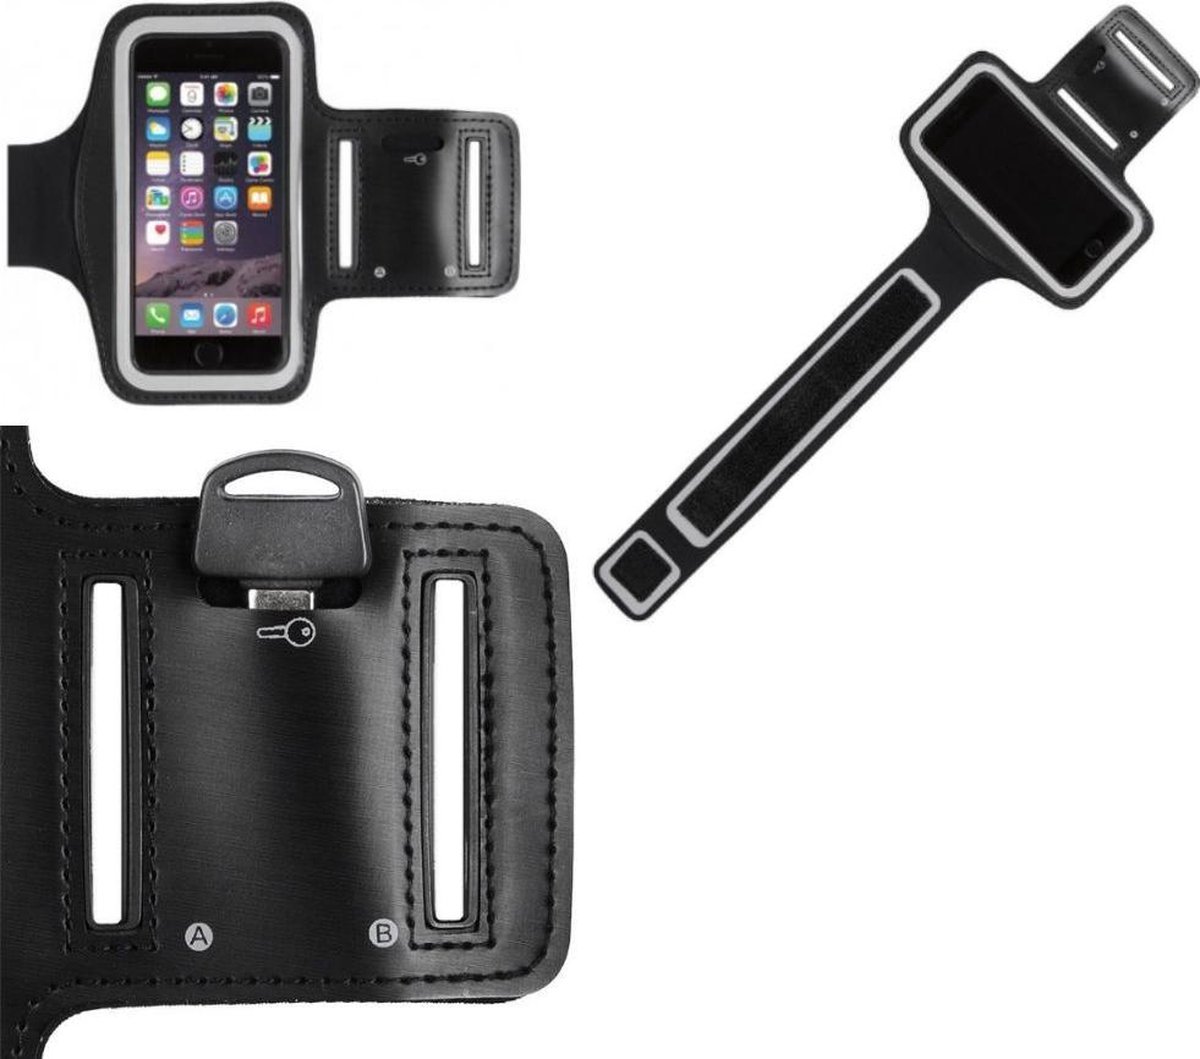 Sportband iPhone 6 Plus (5.5 inch) hardloop sport armband met reflectie Zwart